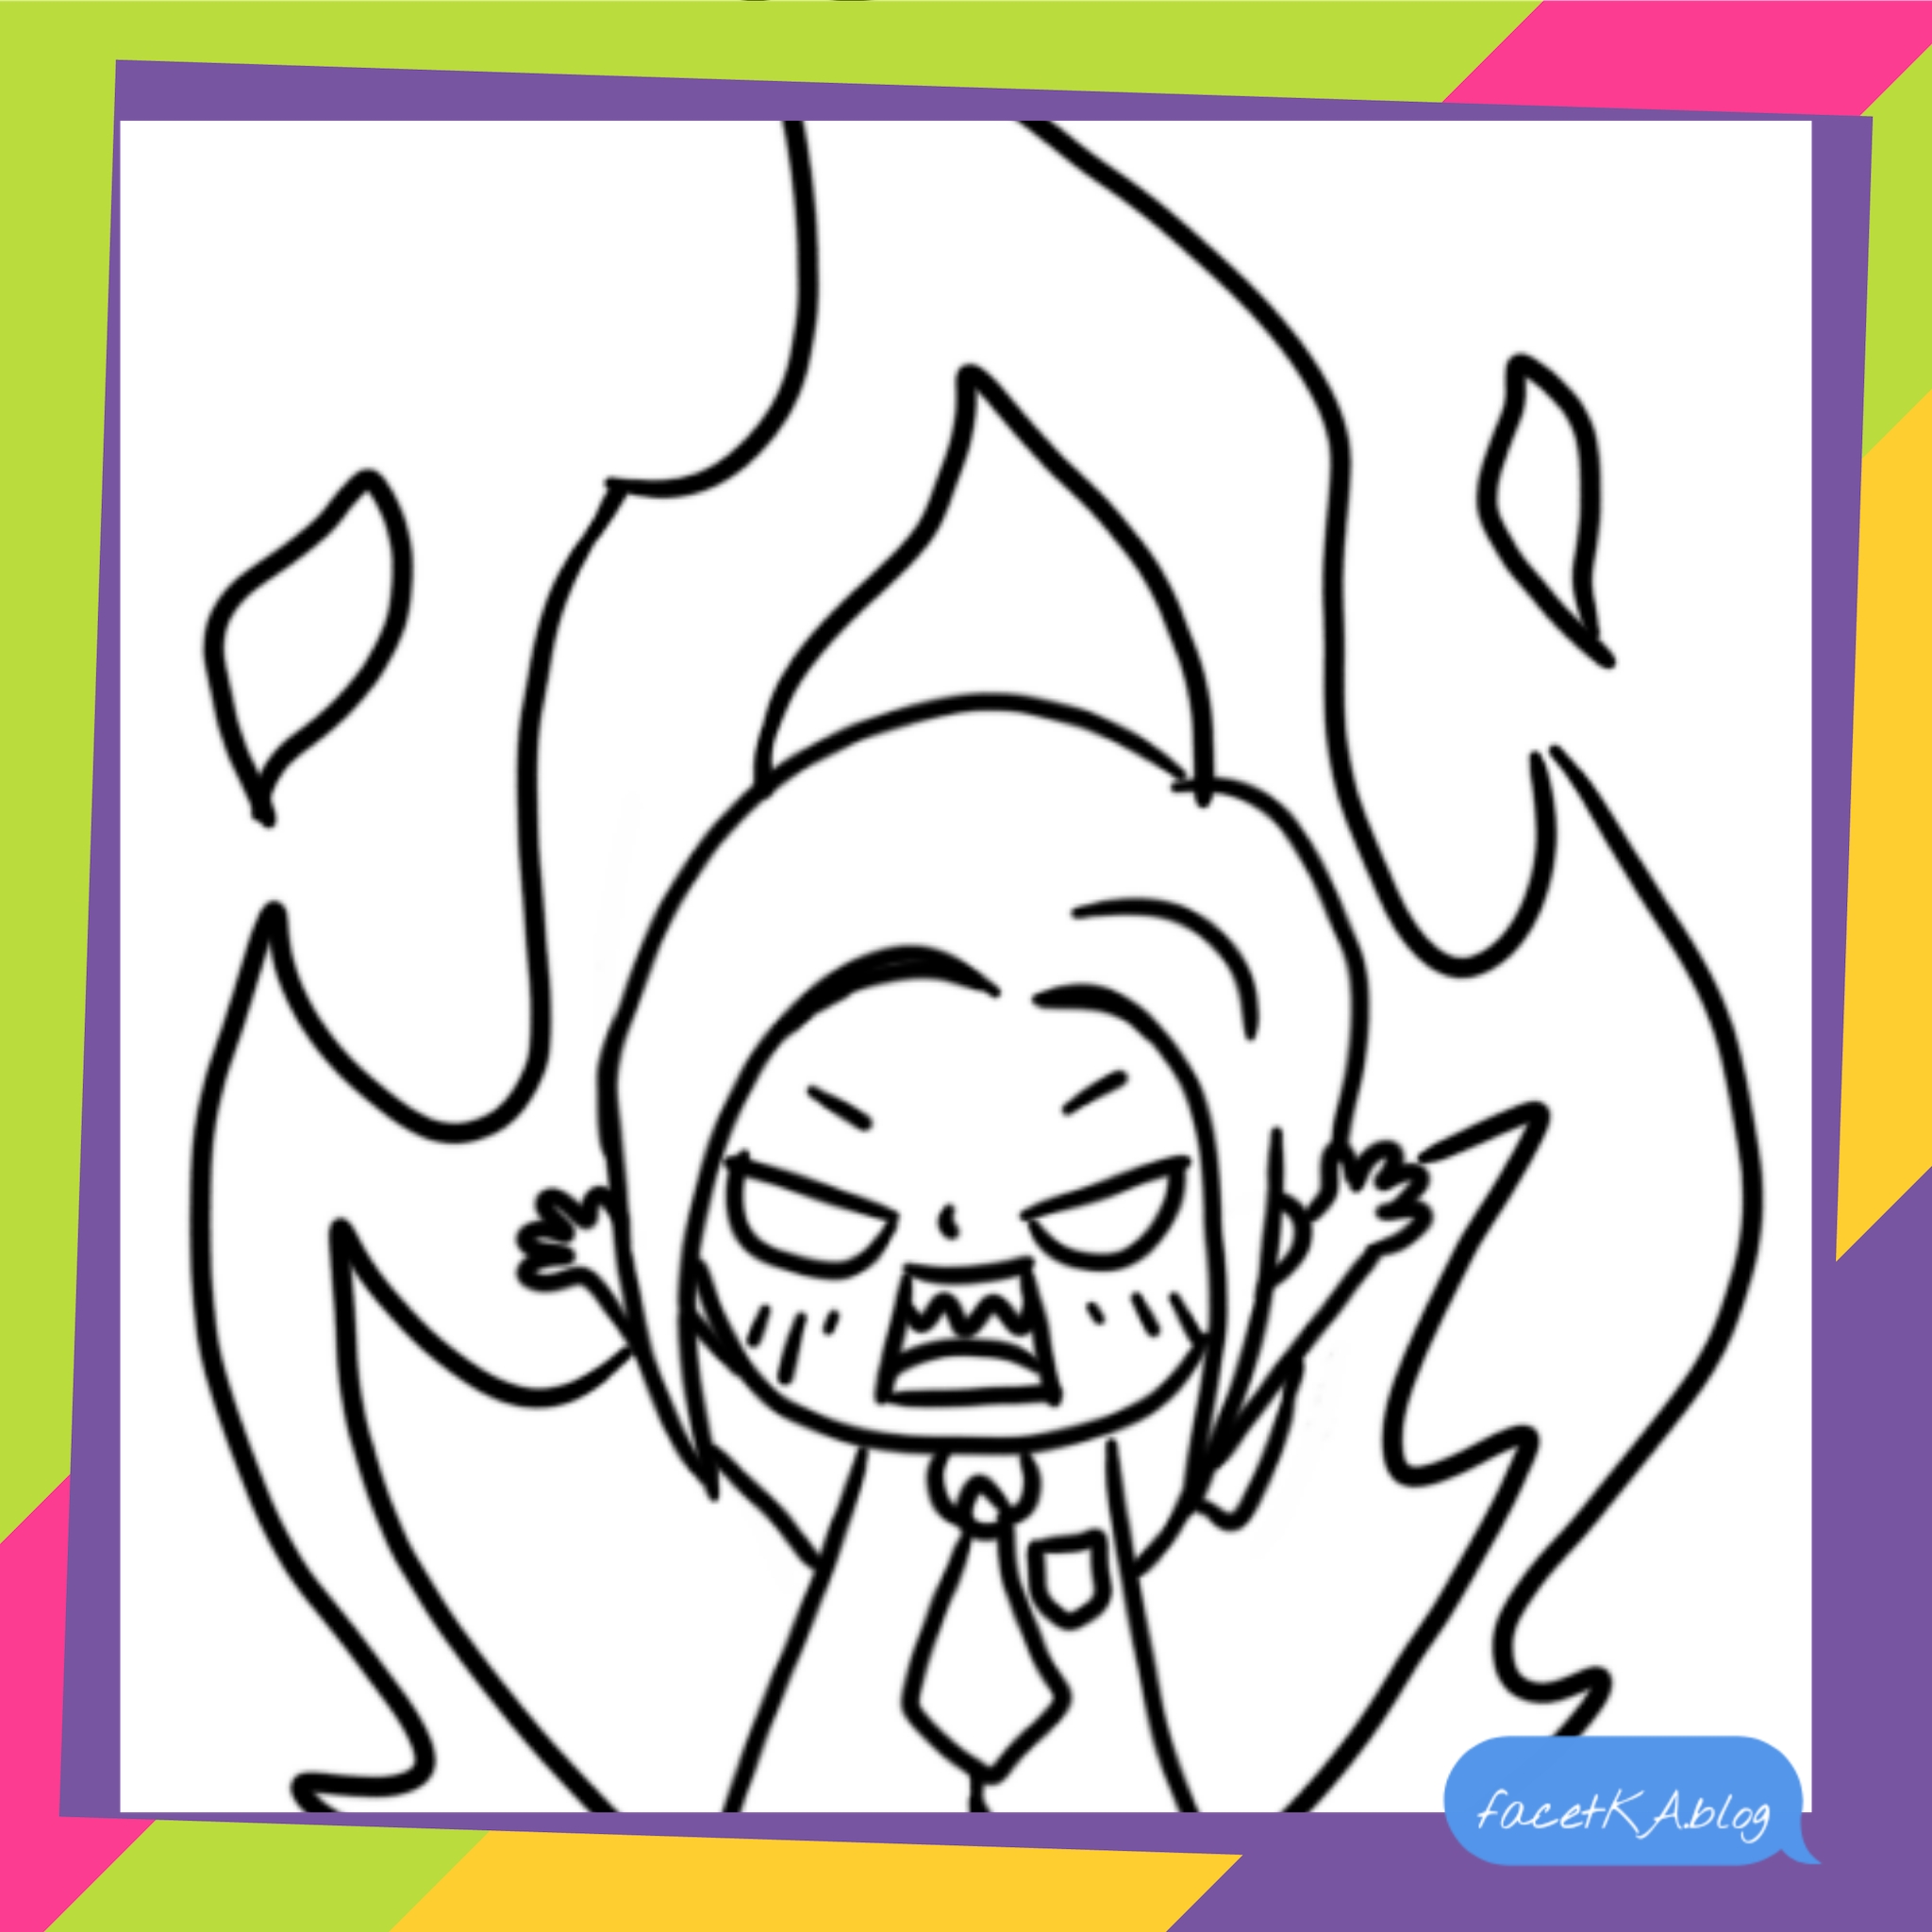 Angry chibi girl, fire chibi, złość, wściekłość